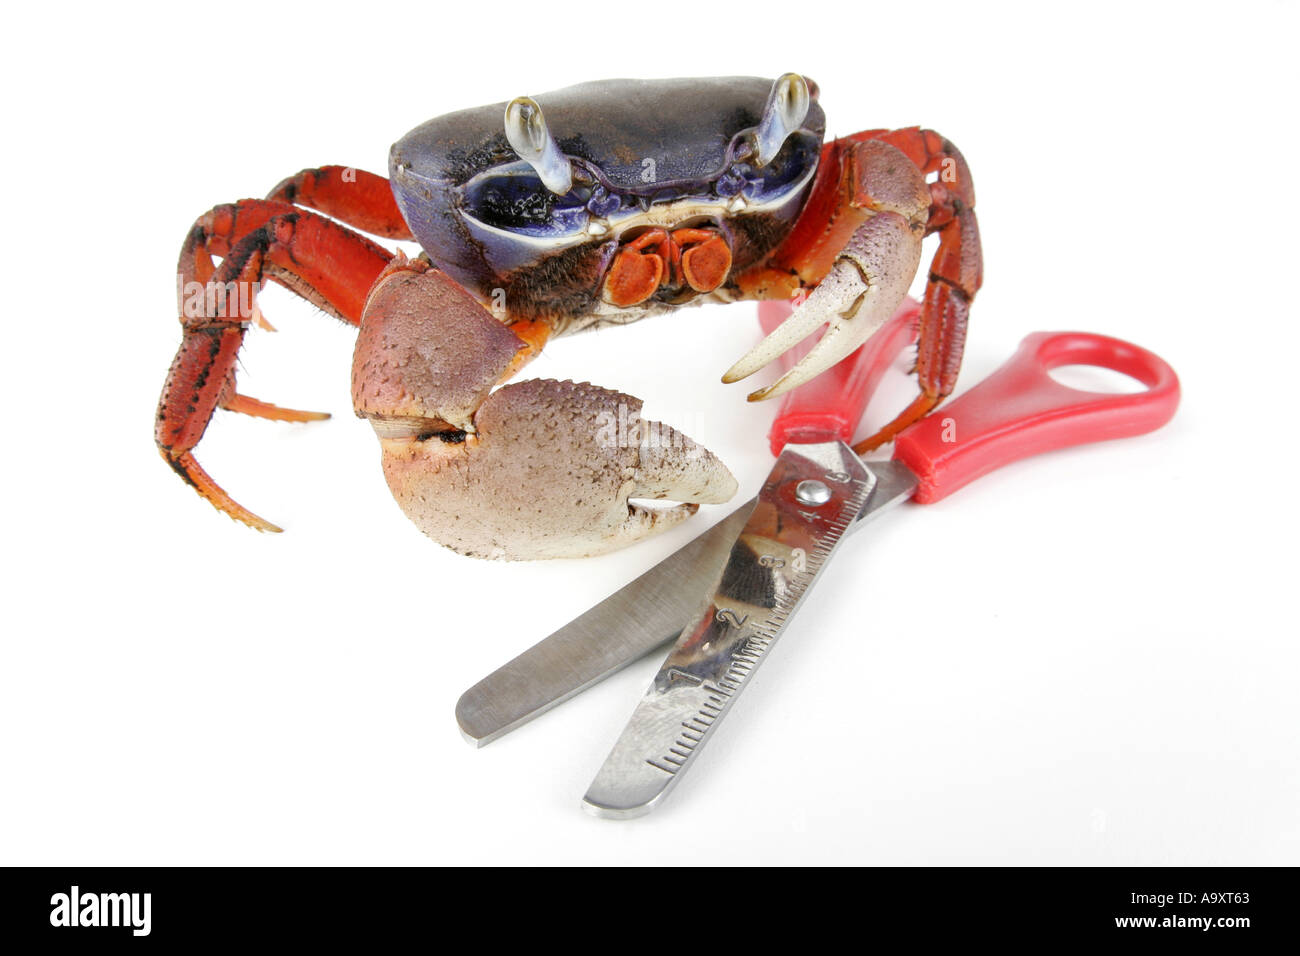 rainbow crab, West African rainbow crab (Cardisoma armatum), with scissor. Stock Photo